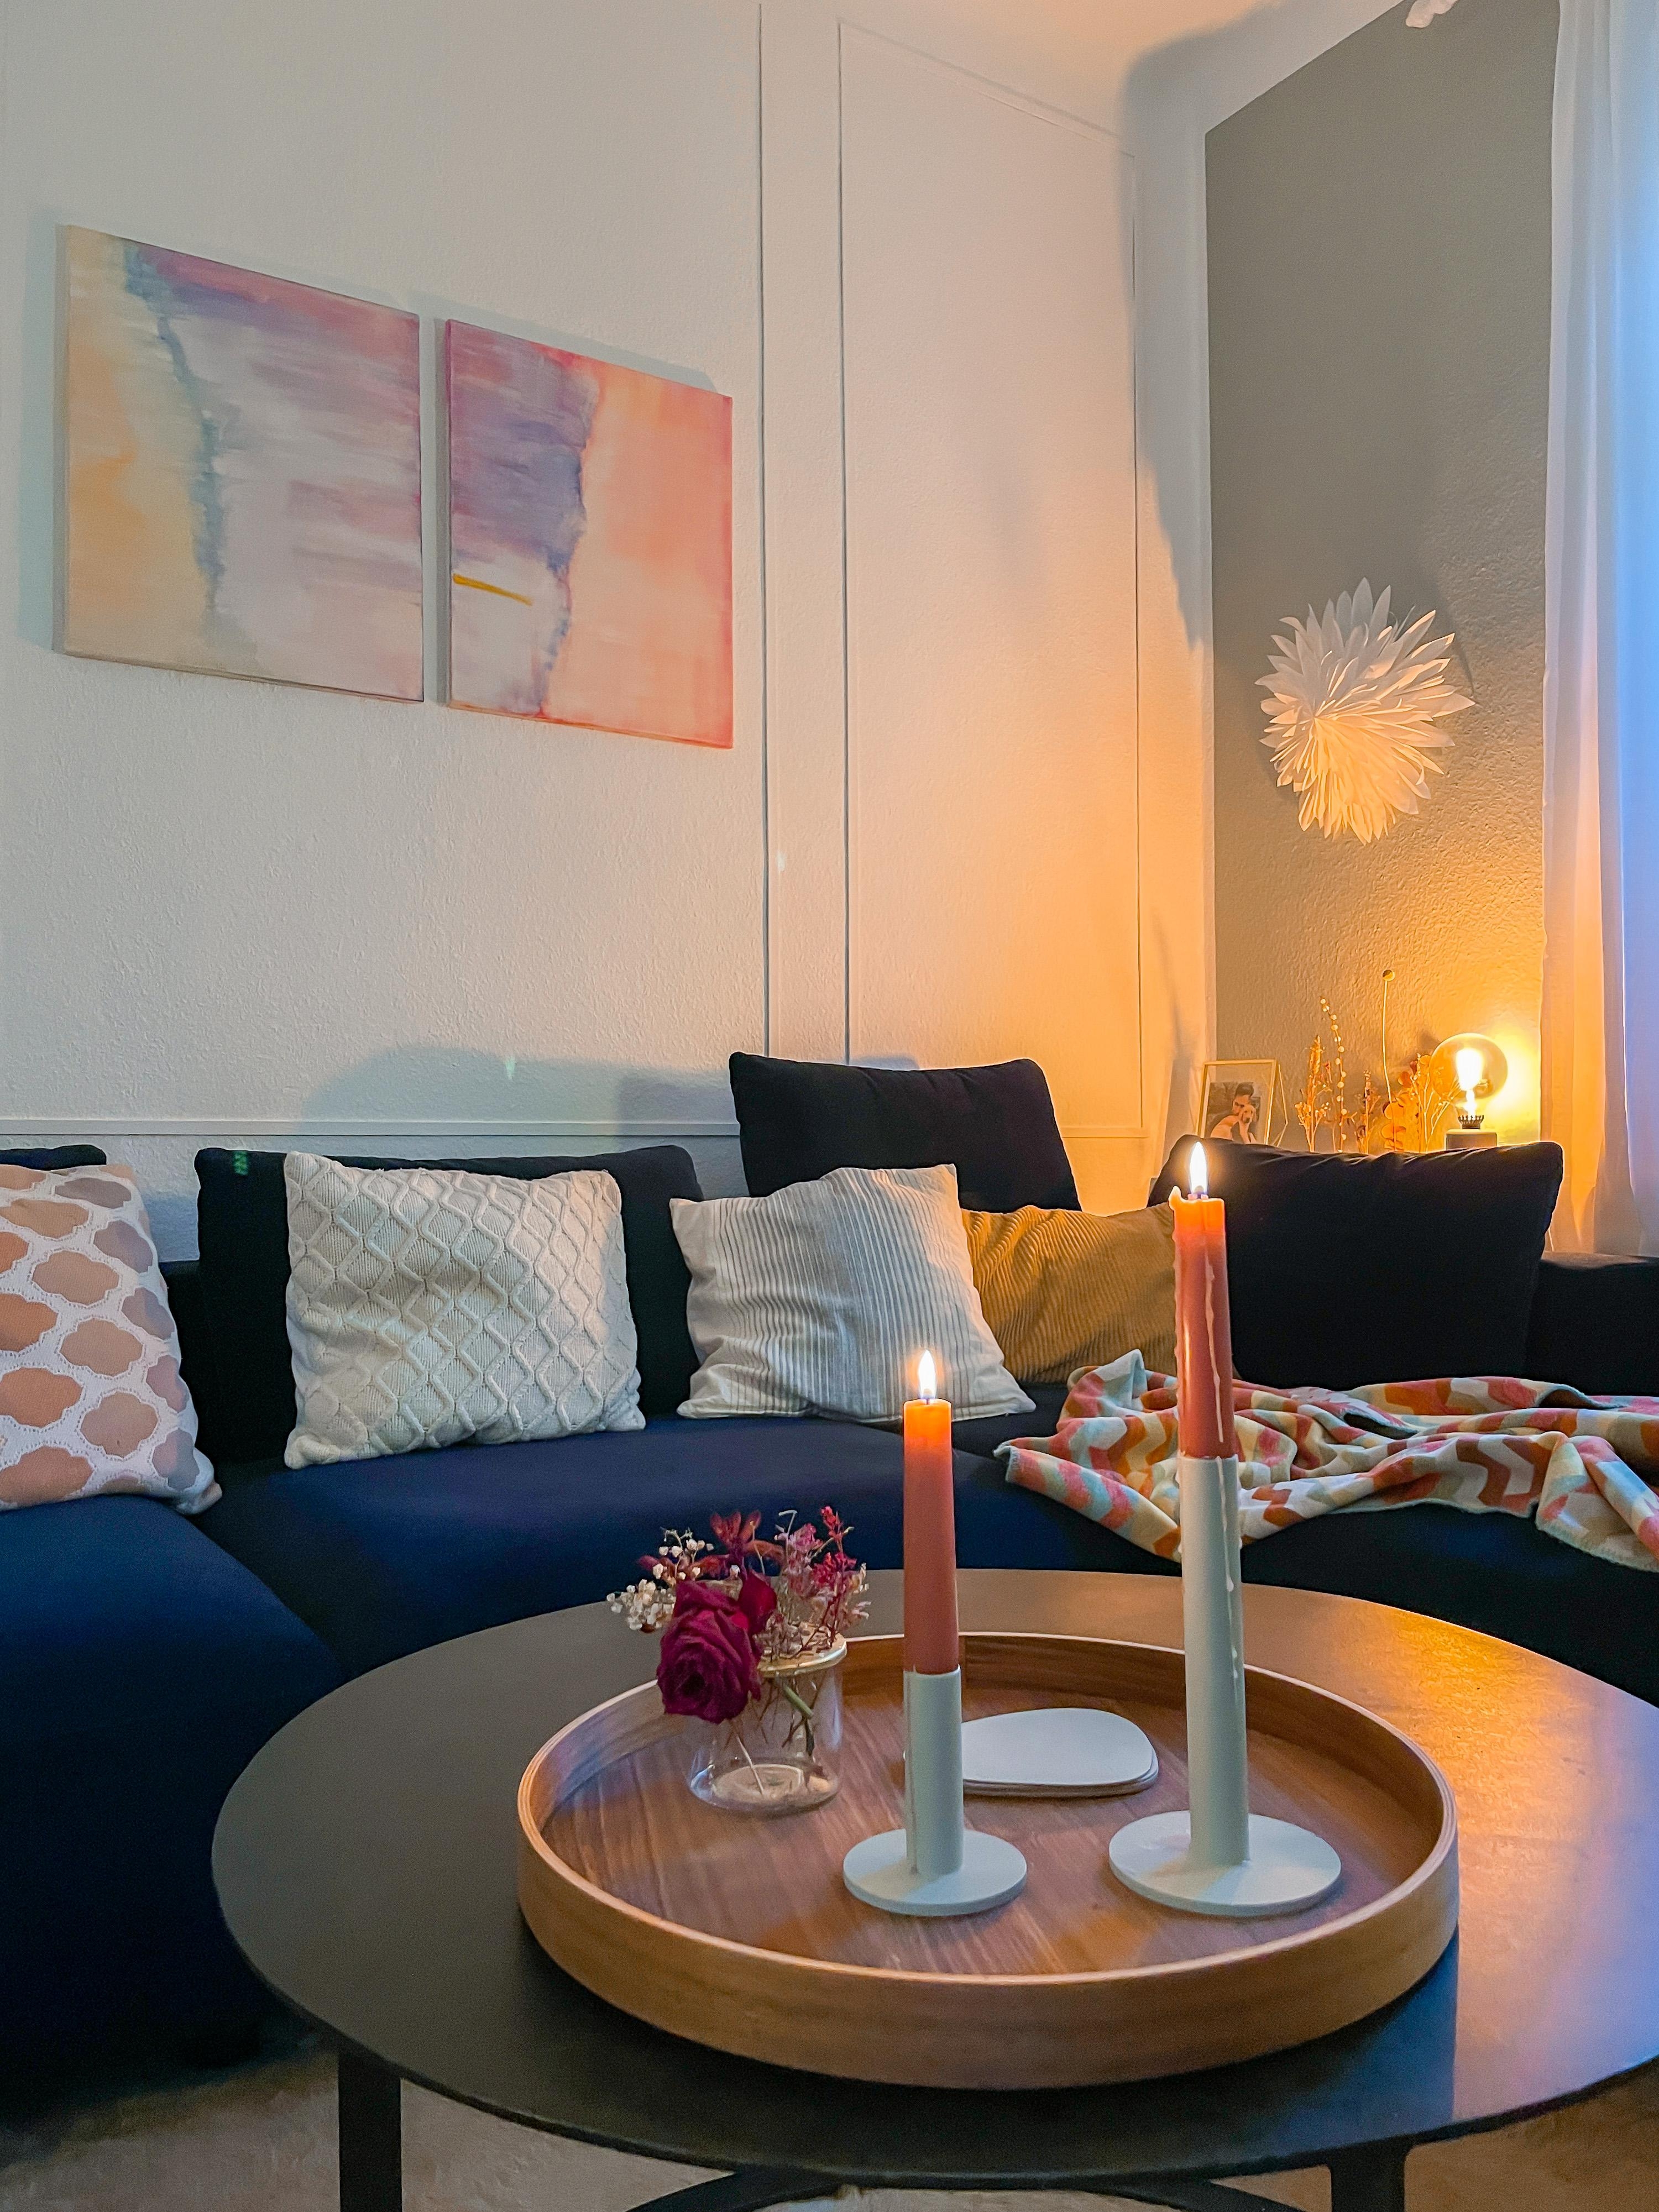 #couch #darkblue #candles #wohnzimmer #livingroom